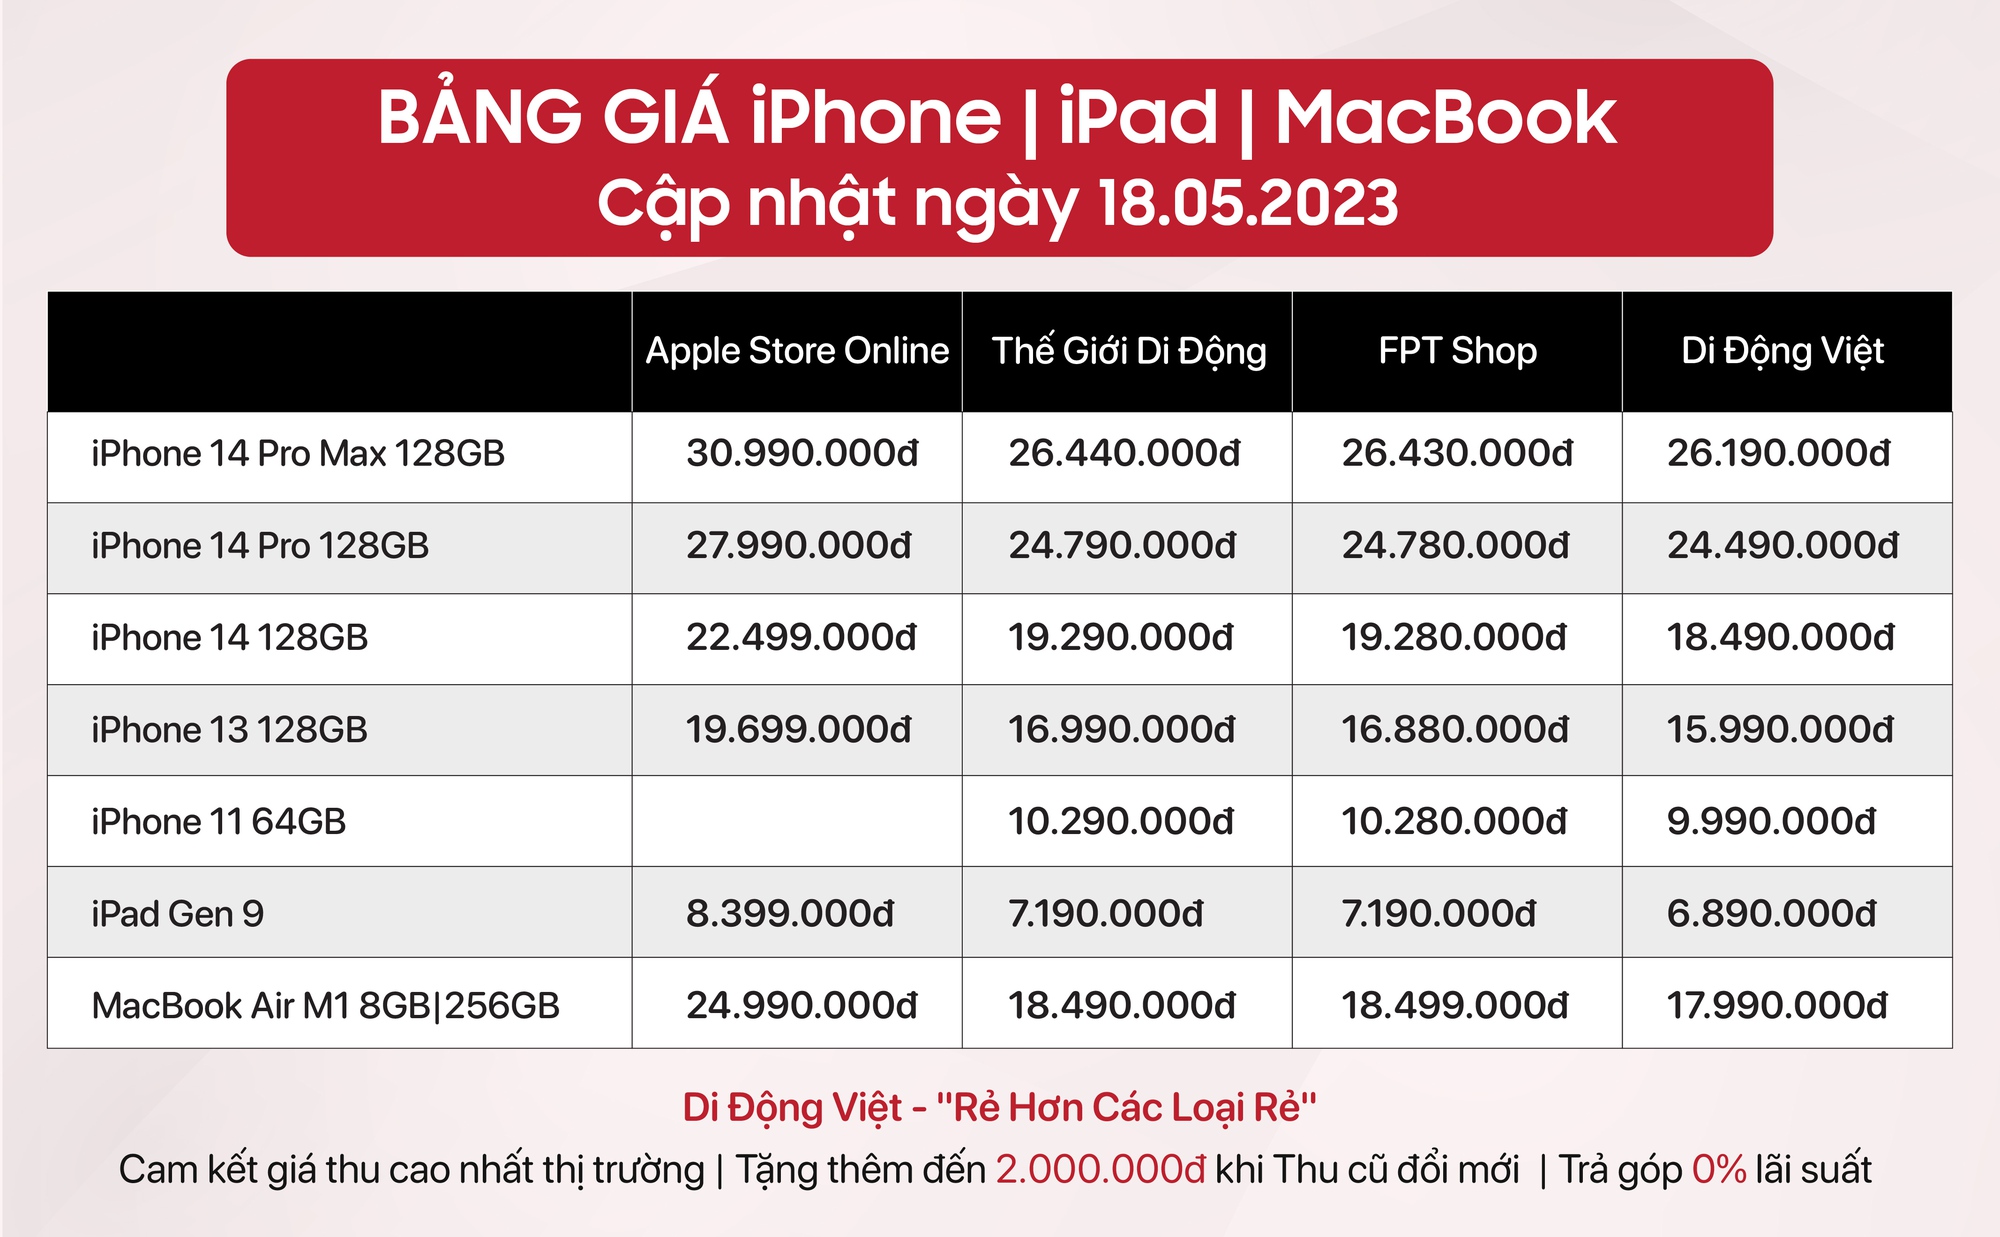 Tín đồ nhà táo thất vọng vì giá bán trên cửa hàng Apple Việt Nam quá cao - Ảnh 1.